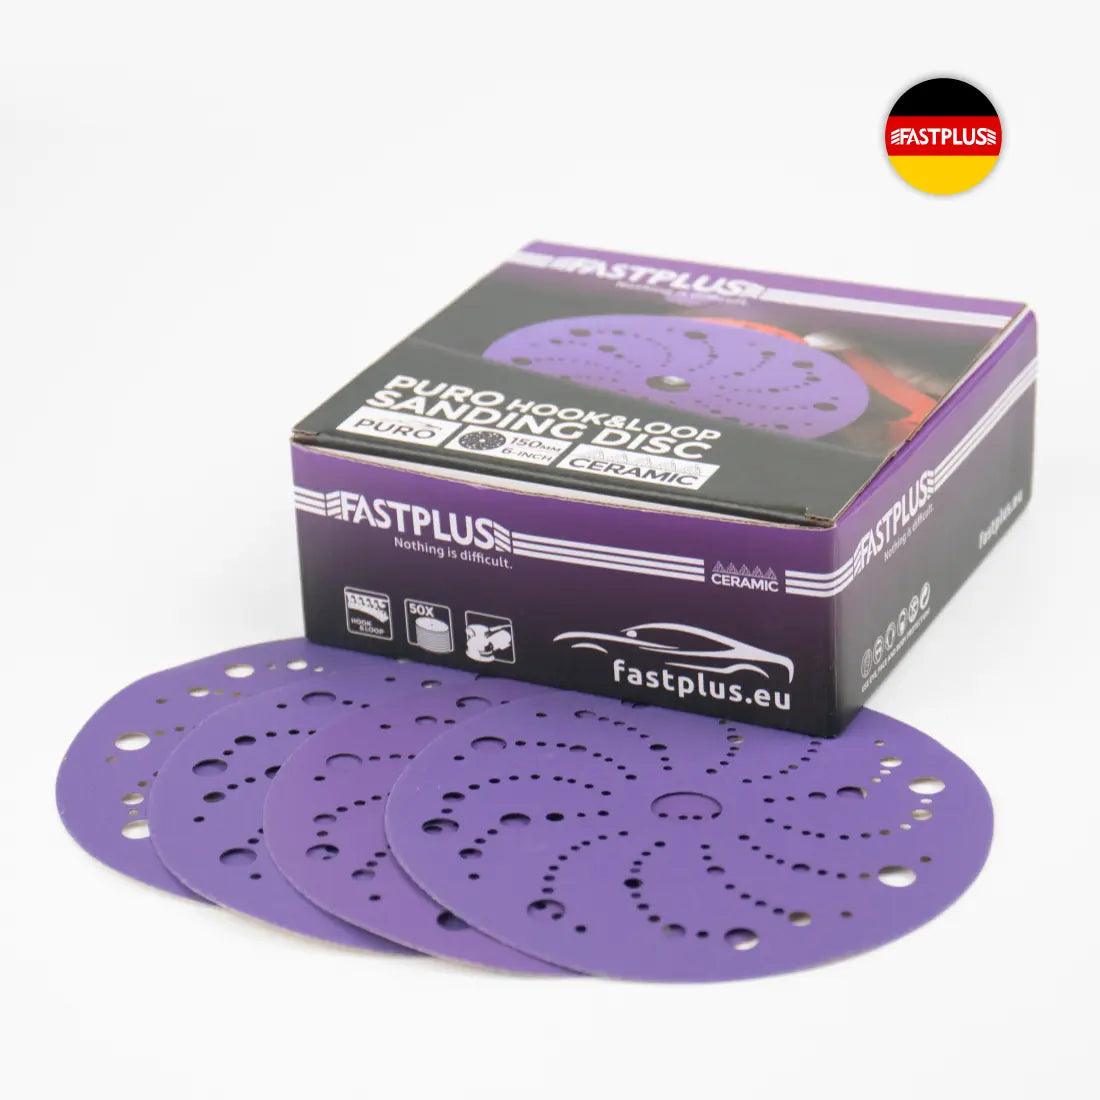 Fastplus Schleifscheiben PURO F737 Keramik 150 mm cubitron Klett-schleifscheiben Multi-Loch, 50 Stück - Lila Ceramic Sanding Discs 150mm Velcro Multi-hole, 50 pieces Purple